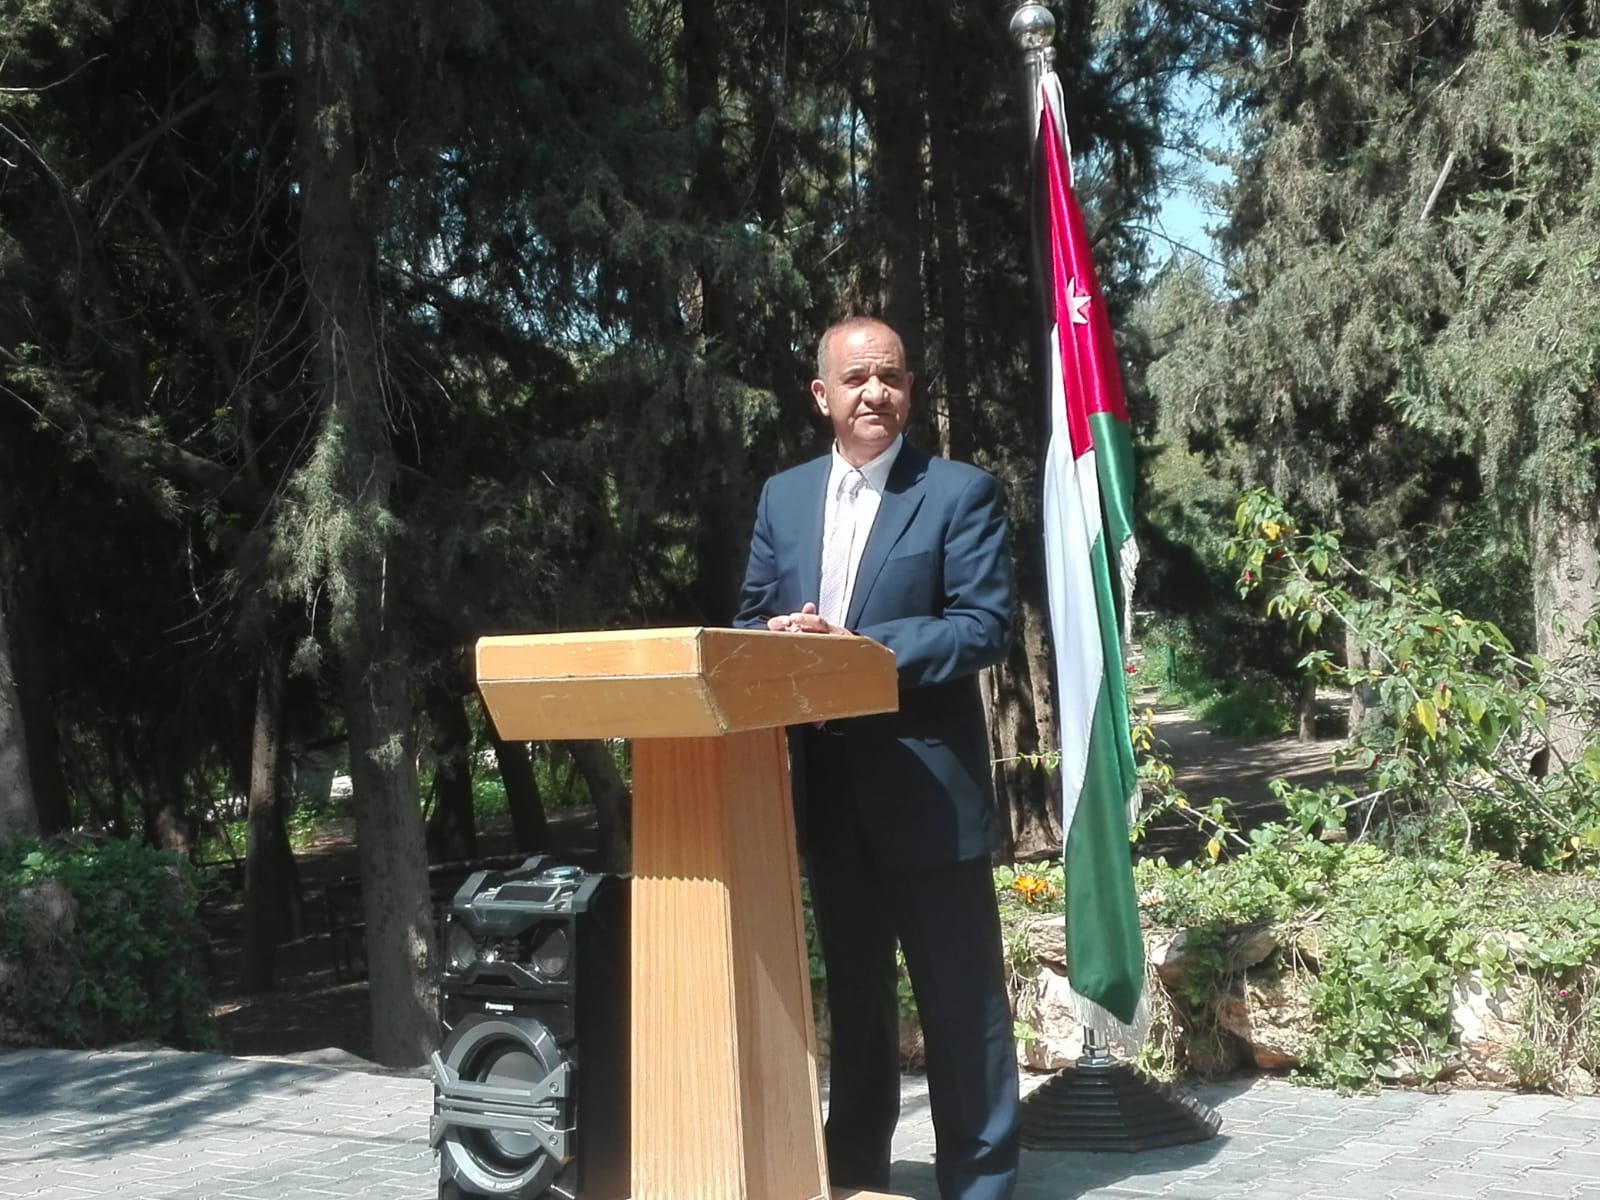 The speech by Jehad Mattar